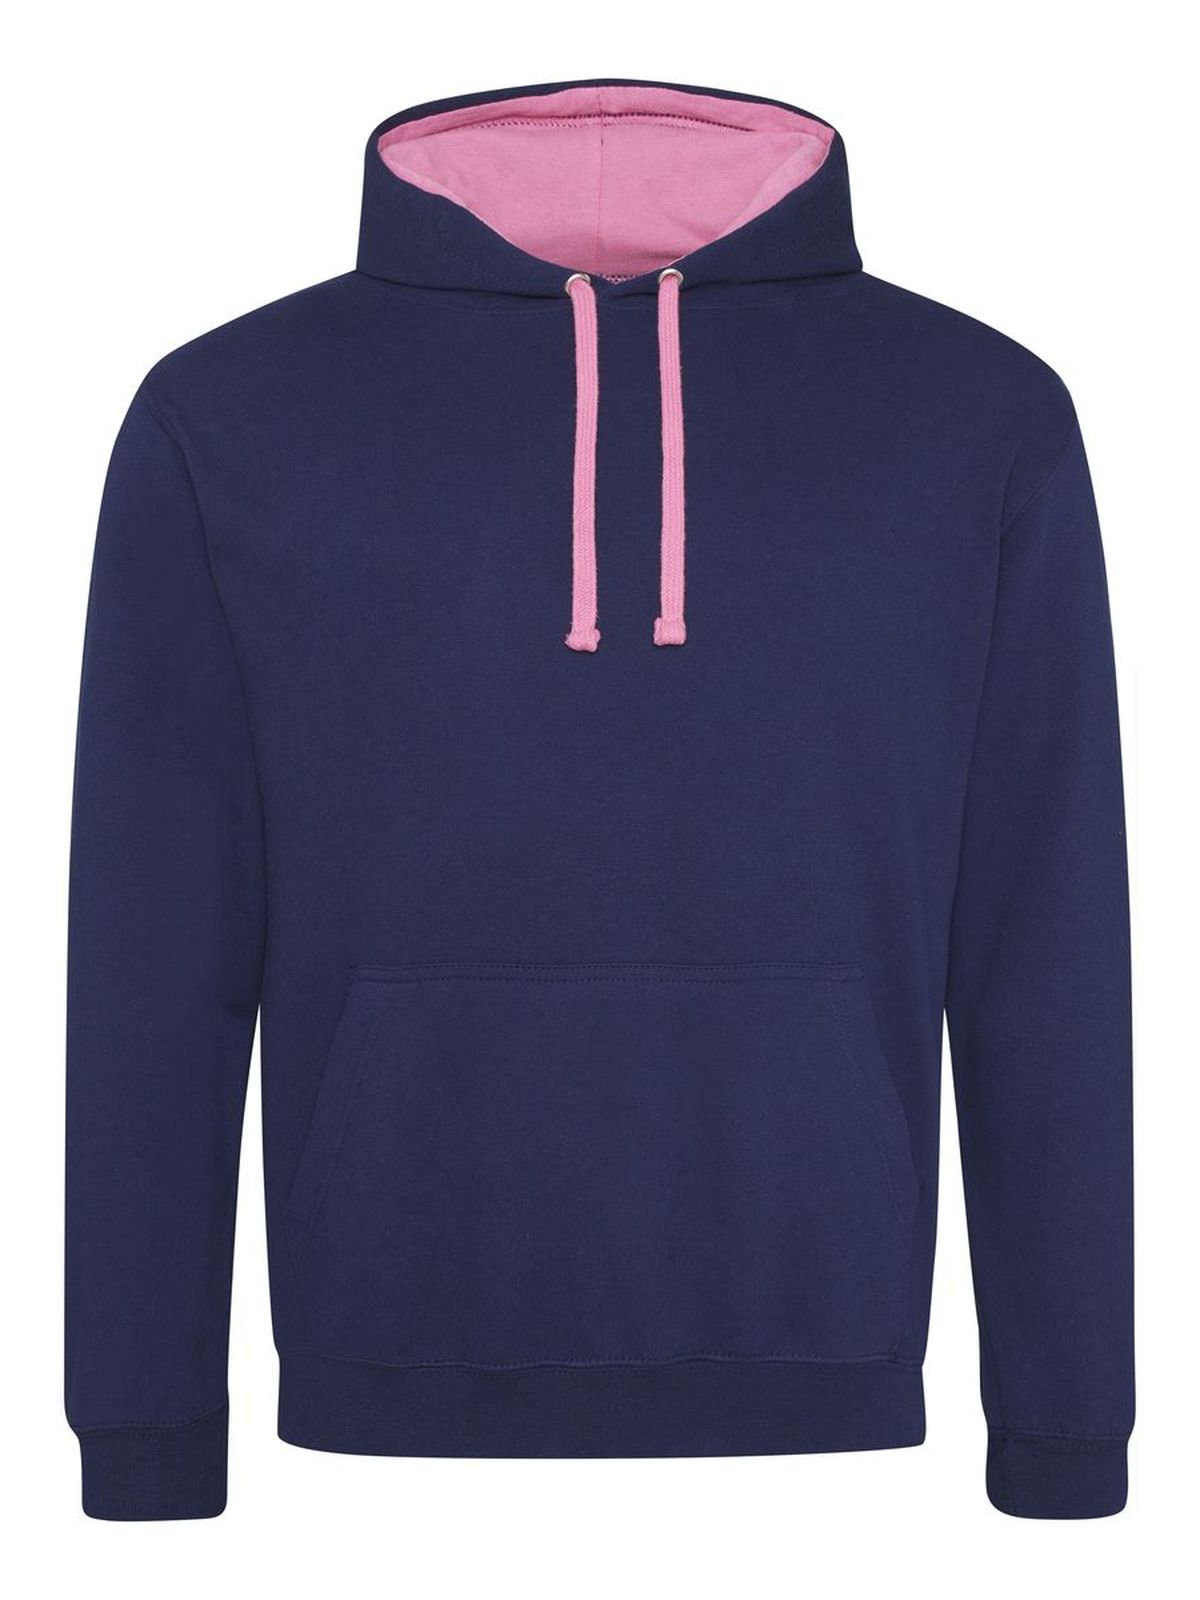 varsity-hoodie-oxford-navy-candyfloss-pink.webp